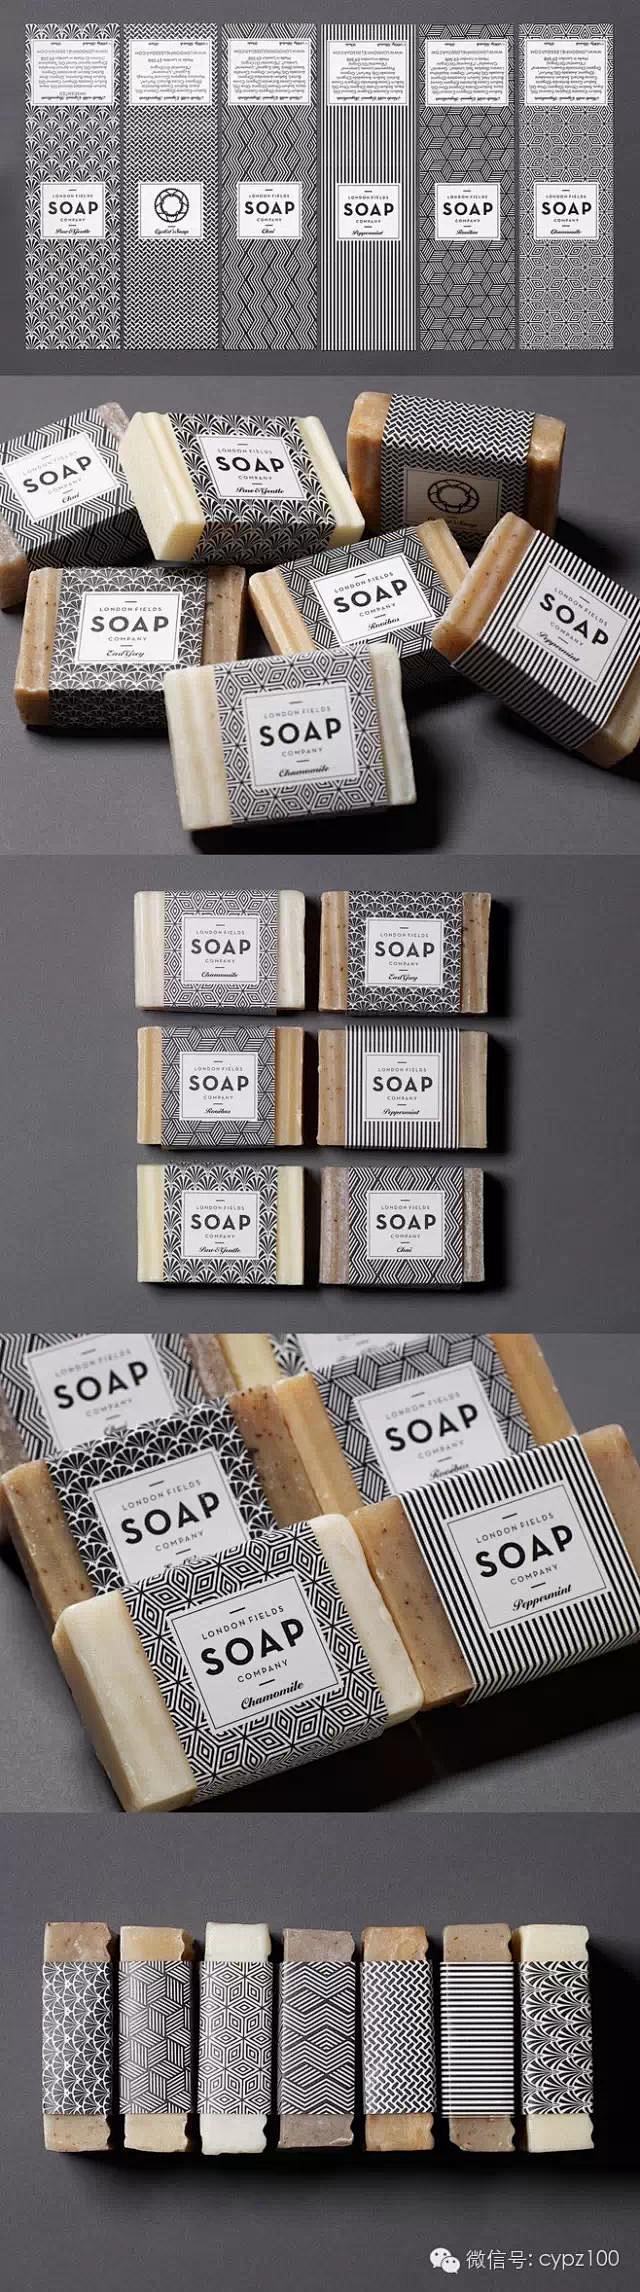 伦敦域手工肥皂包装设计
 
--- 来自...